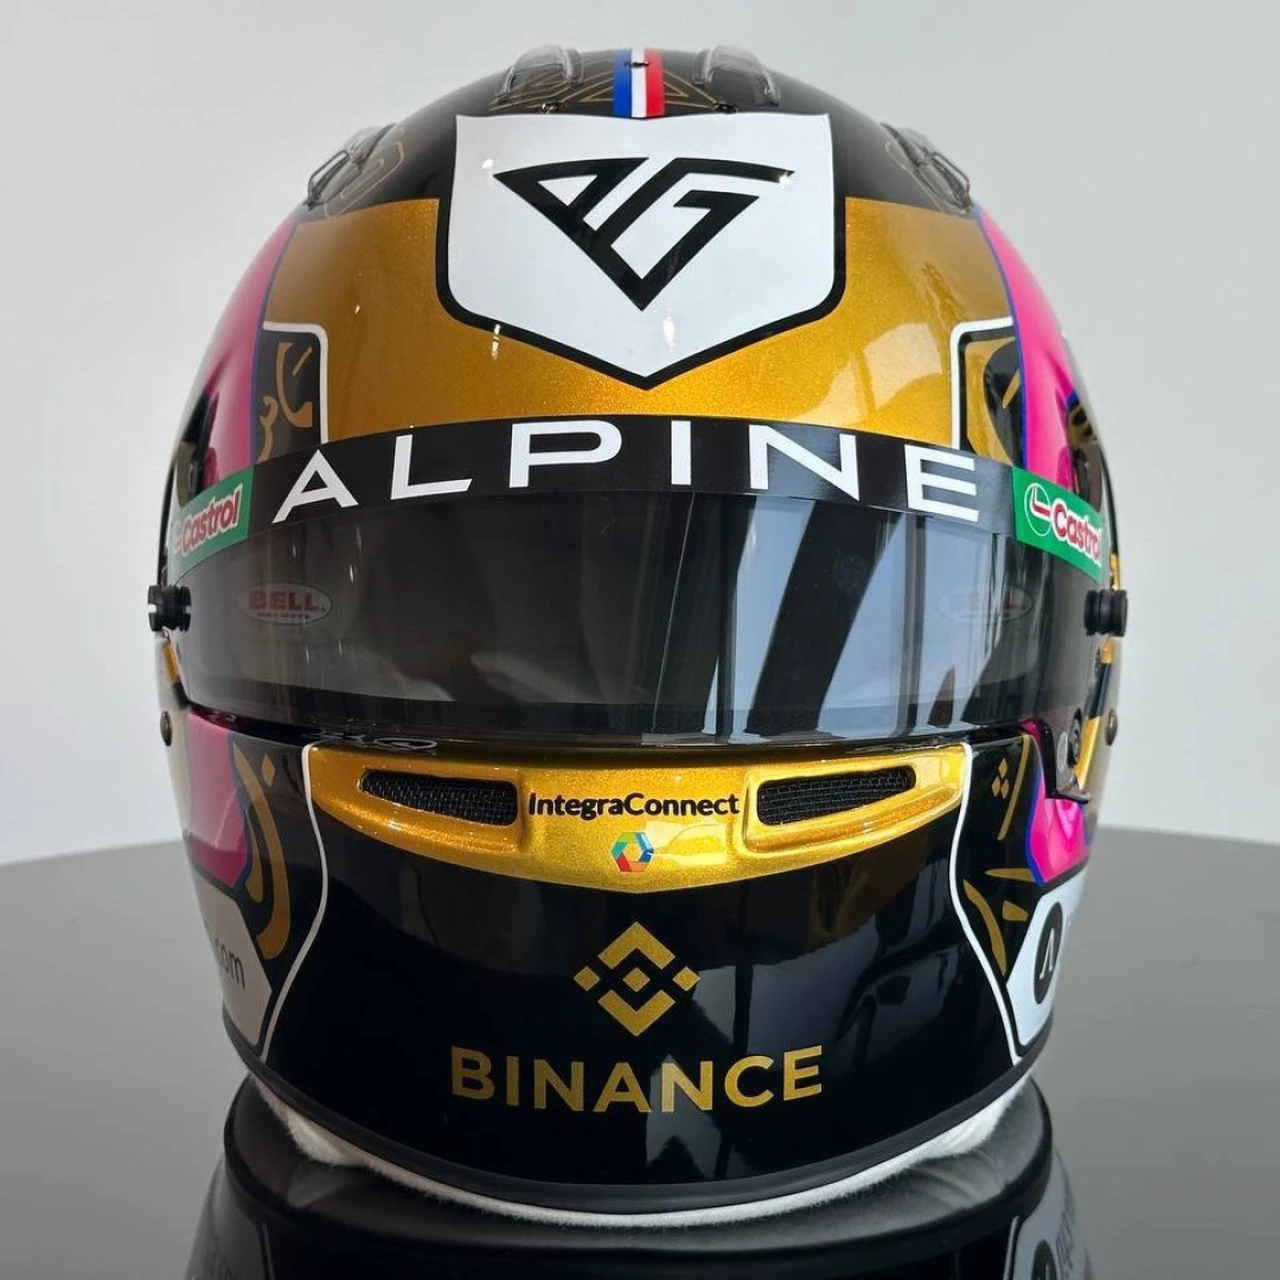 Binance reveló el casco de F1 diseñado por un argentino, fan de Pierre Gasly